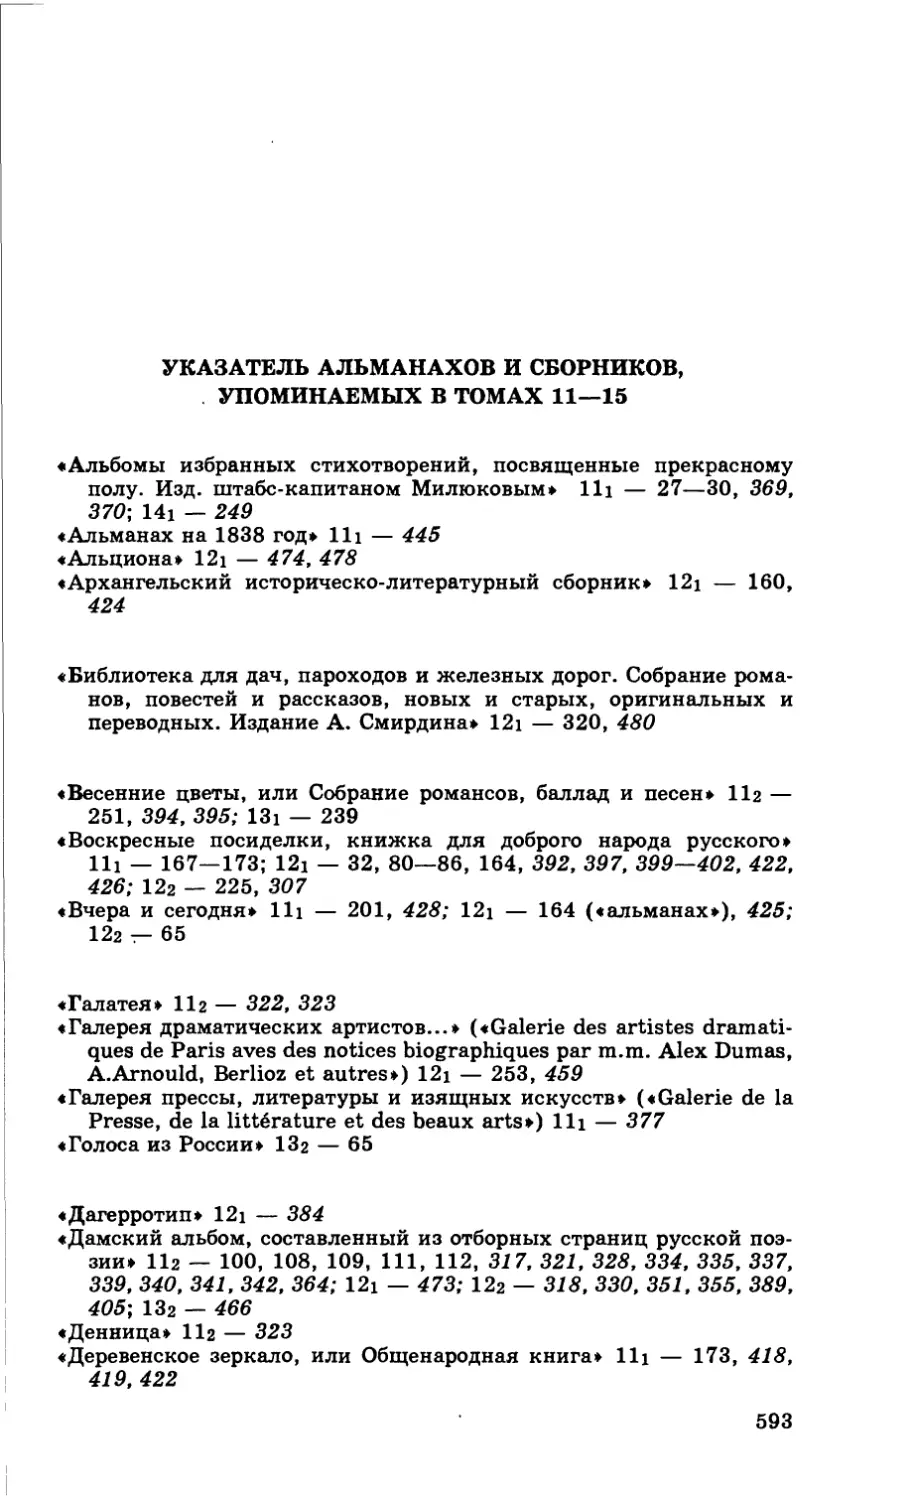 Указатель альманахов и сборников, упоминаемых в томах 11—15